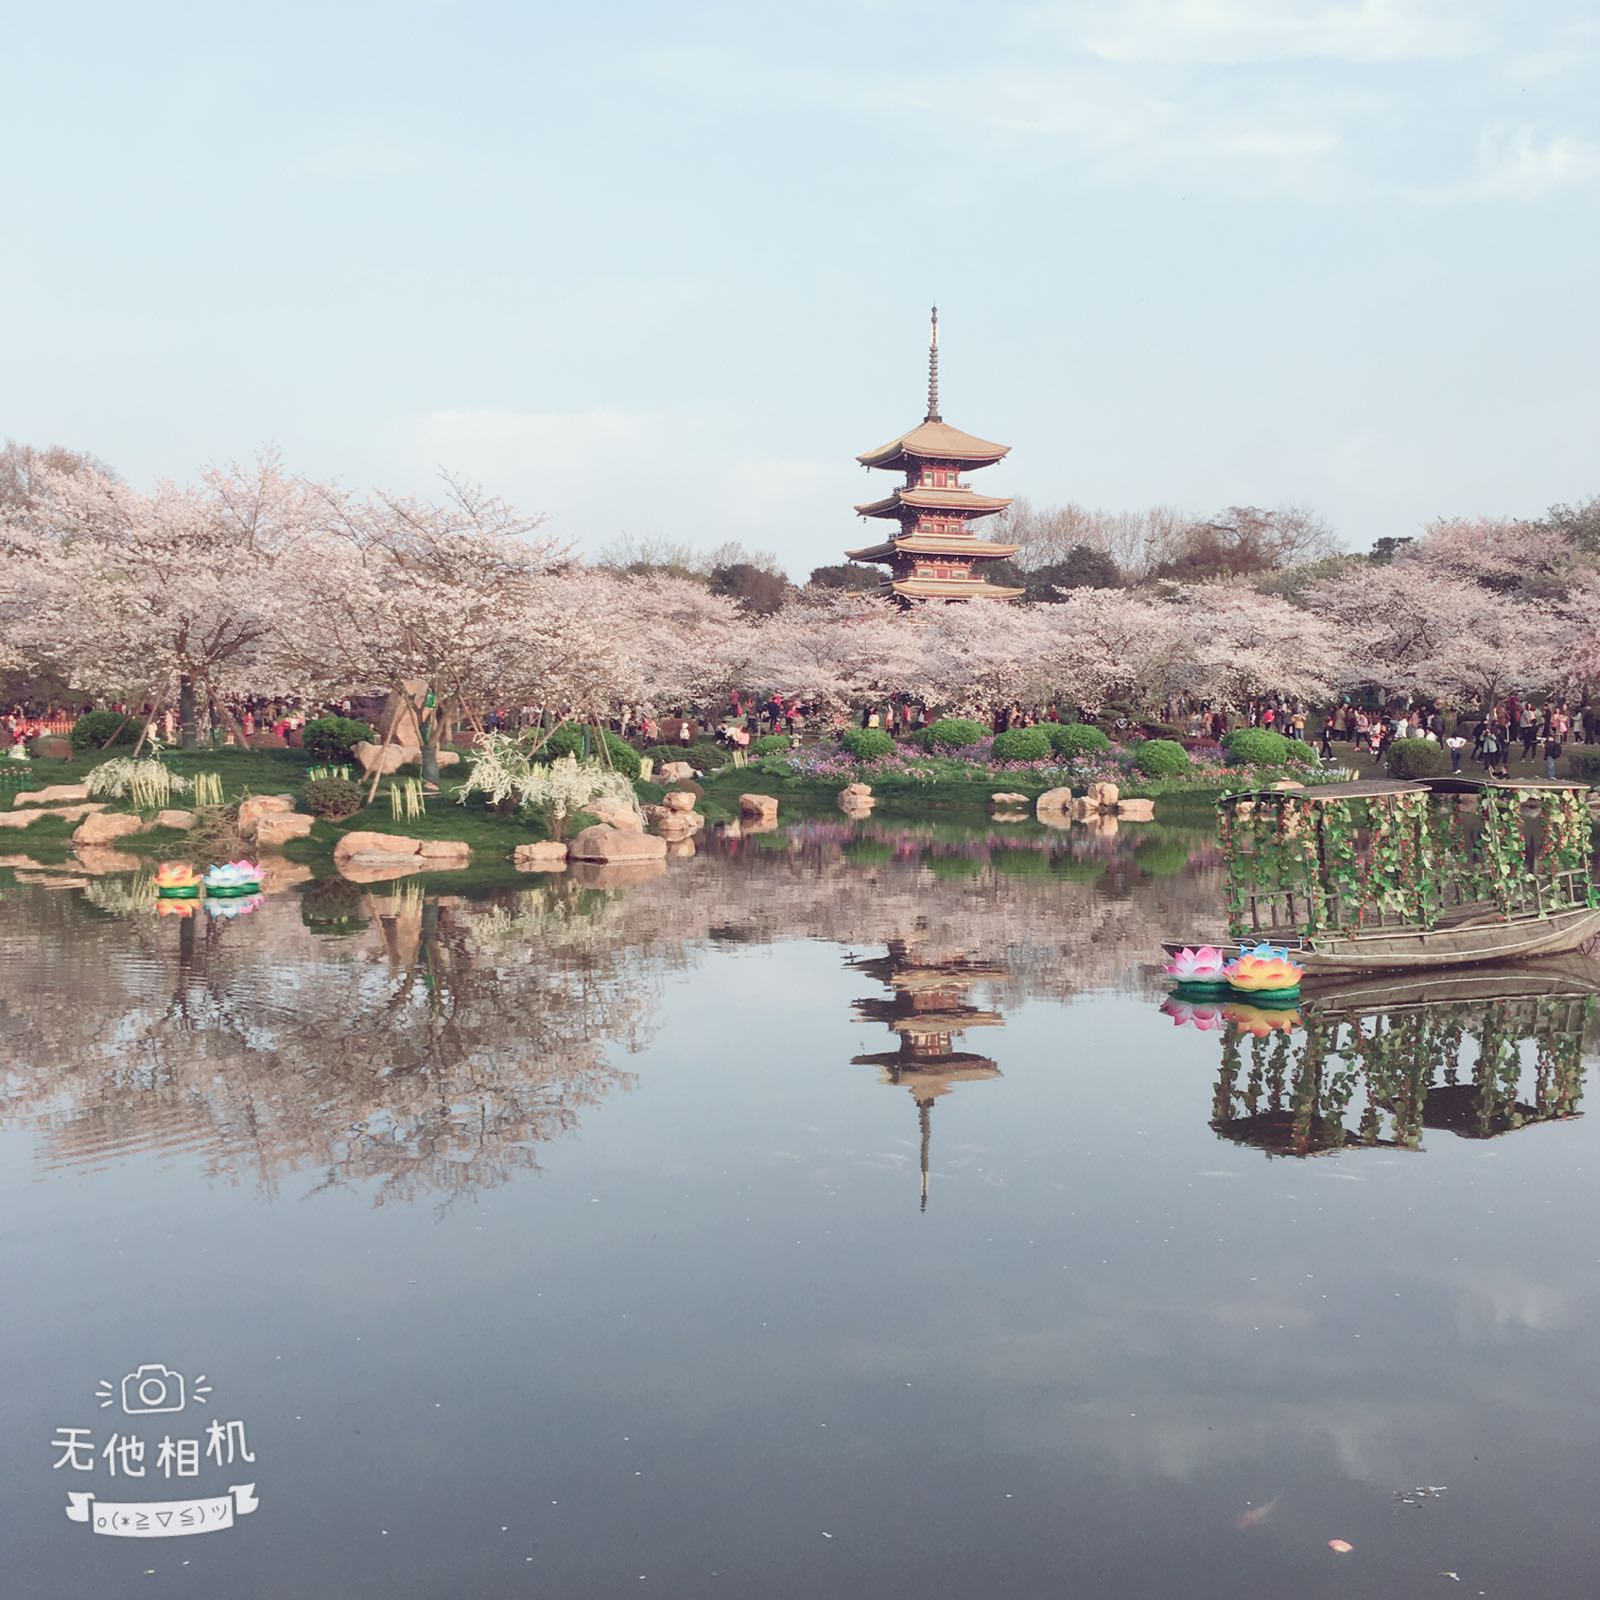 有点像日本的清水寺，樱花很美，就是去的时候人很多。